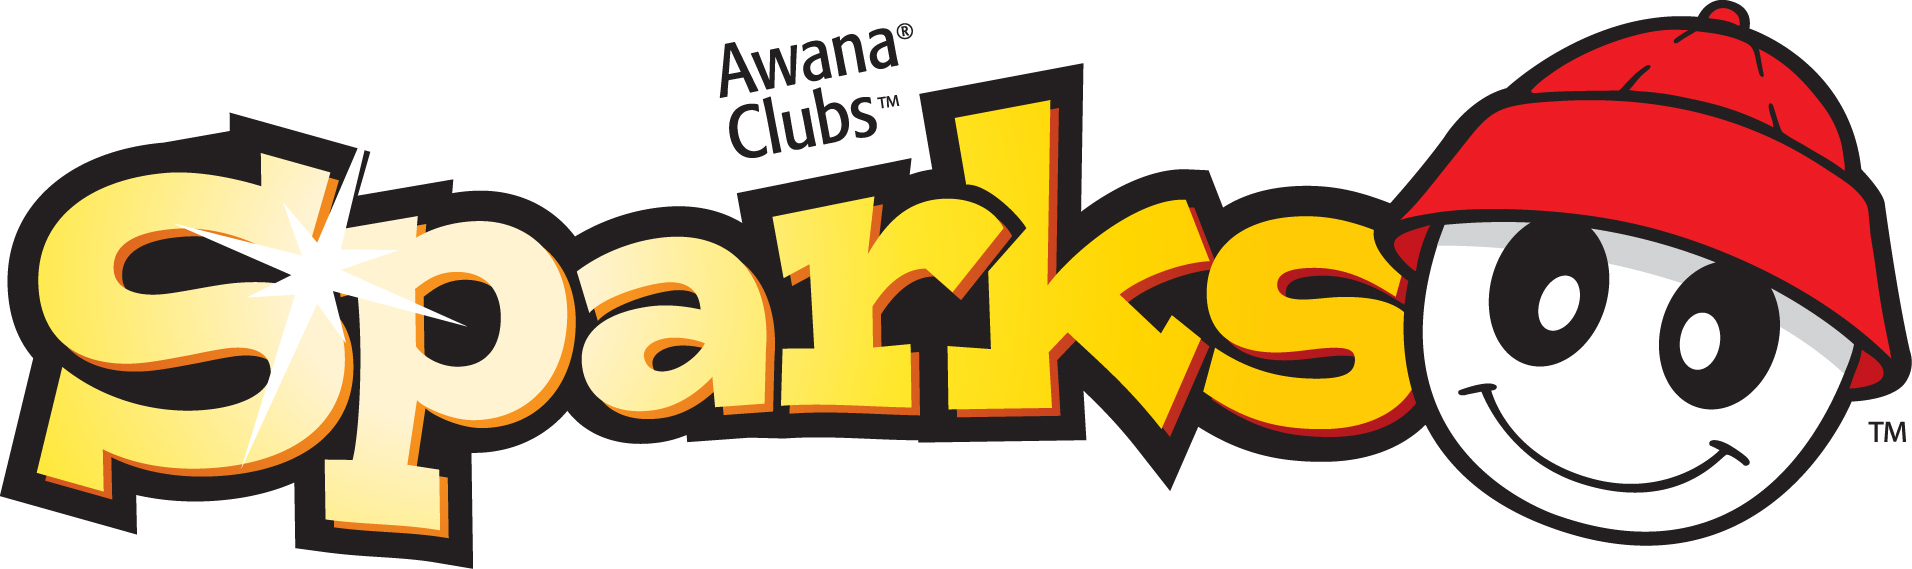 childrens-awana-sparks.jpg